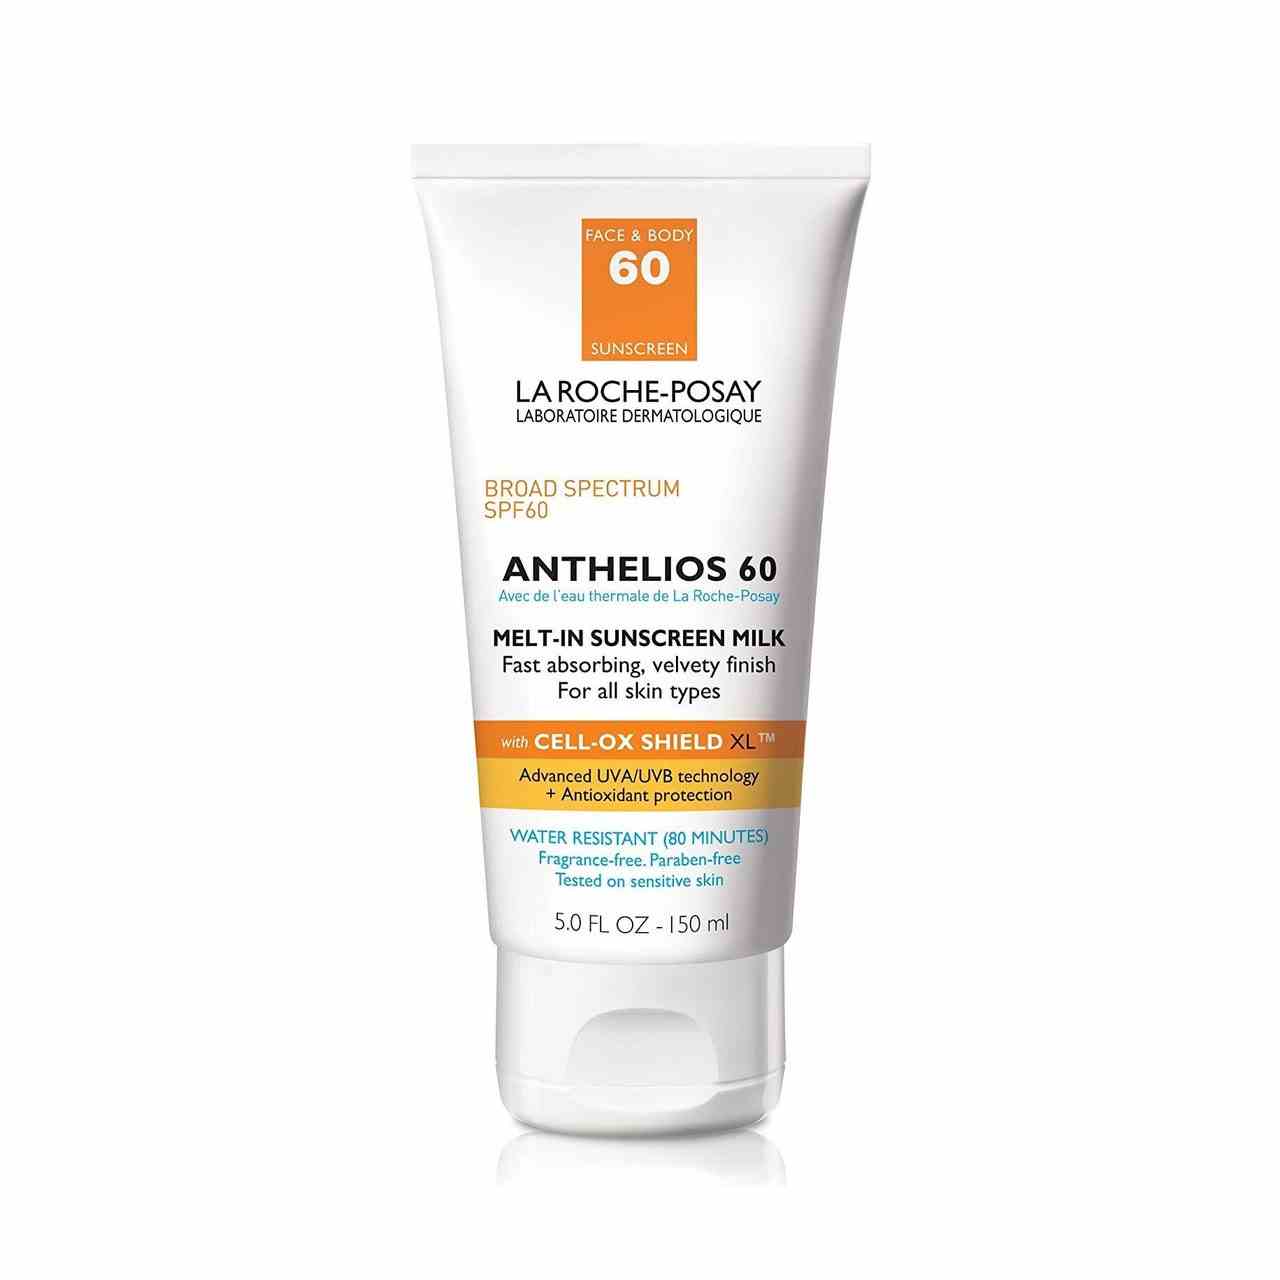 La Roche-Posay Anthelios Melt-In Milk Sunscreen SPF 60 auf weißem Hintergrund